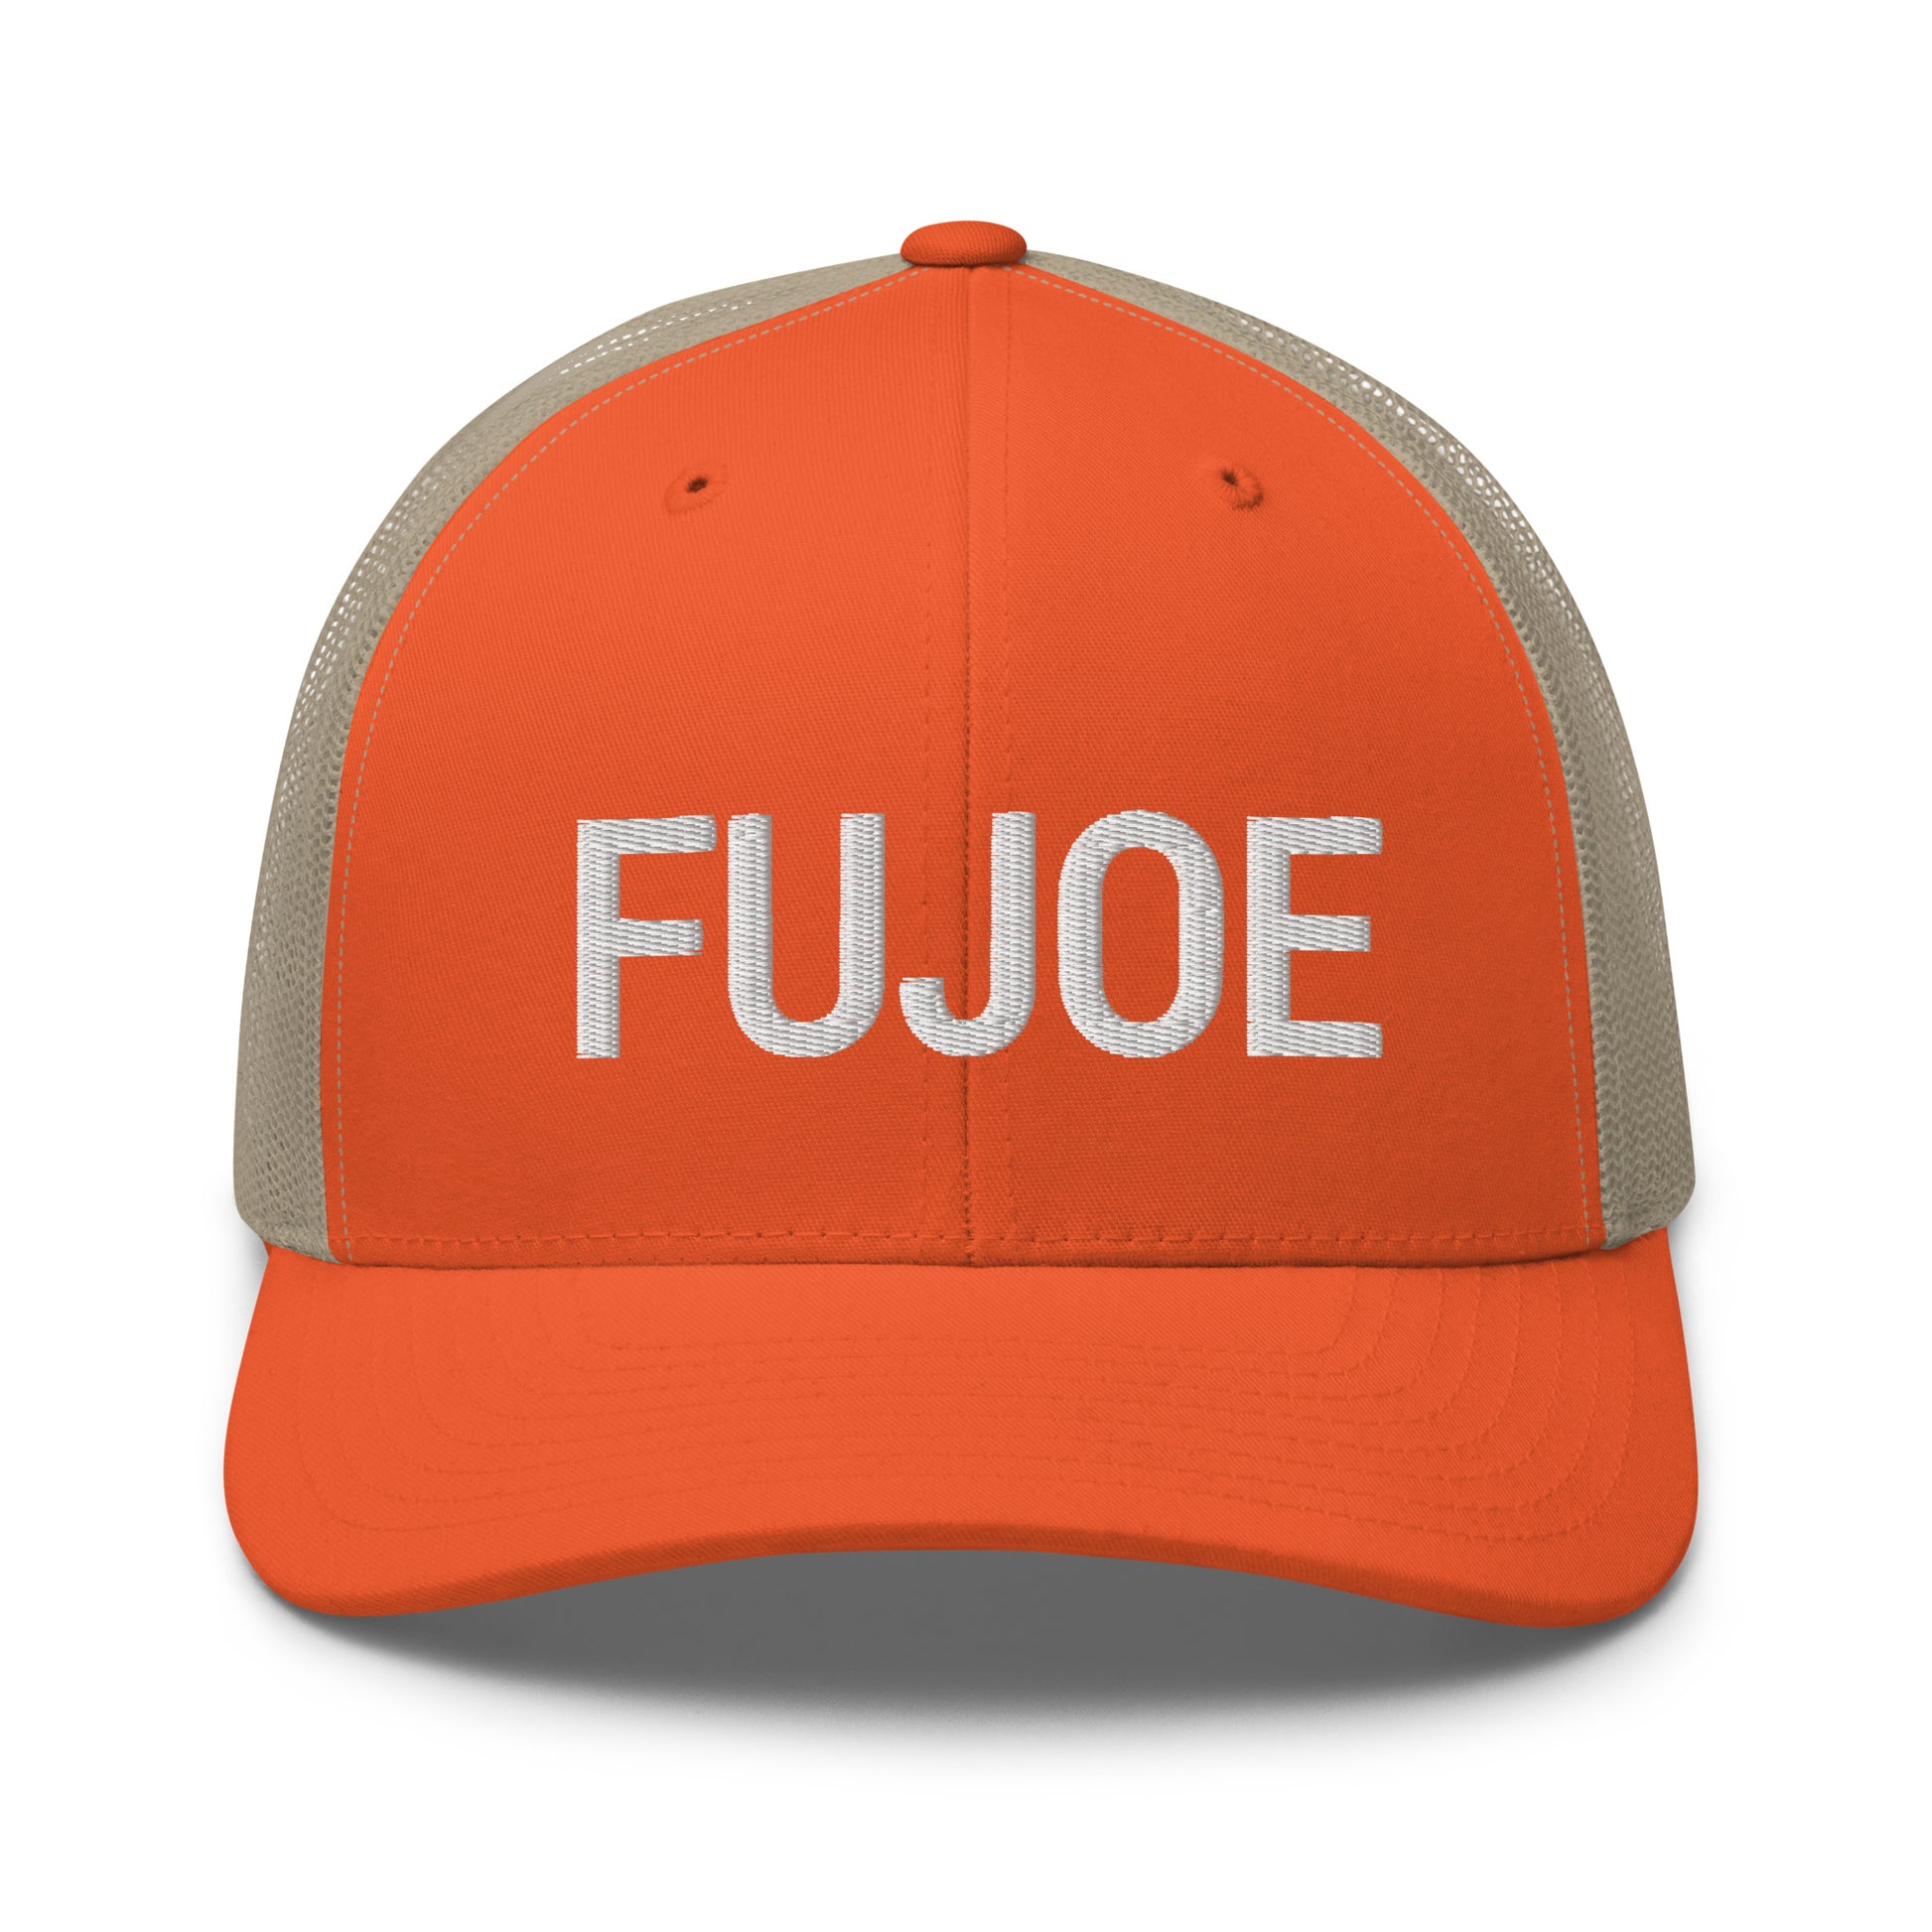 Fujoe Hat / Fujoe Cap /Joe Hat / Fujoe Trucker Cap